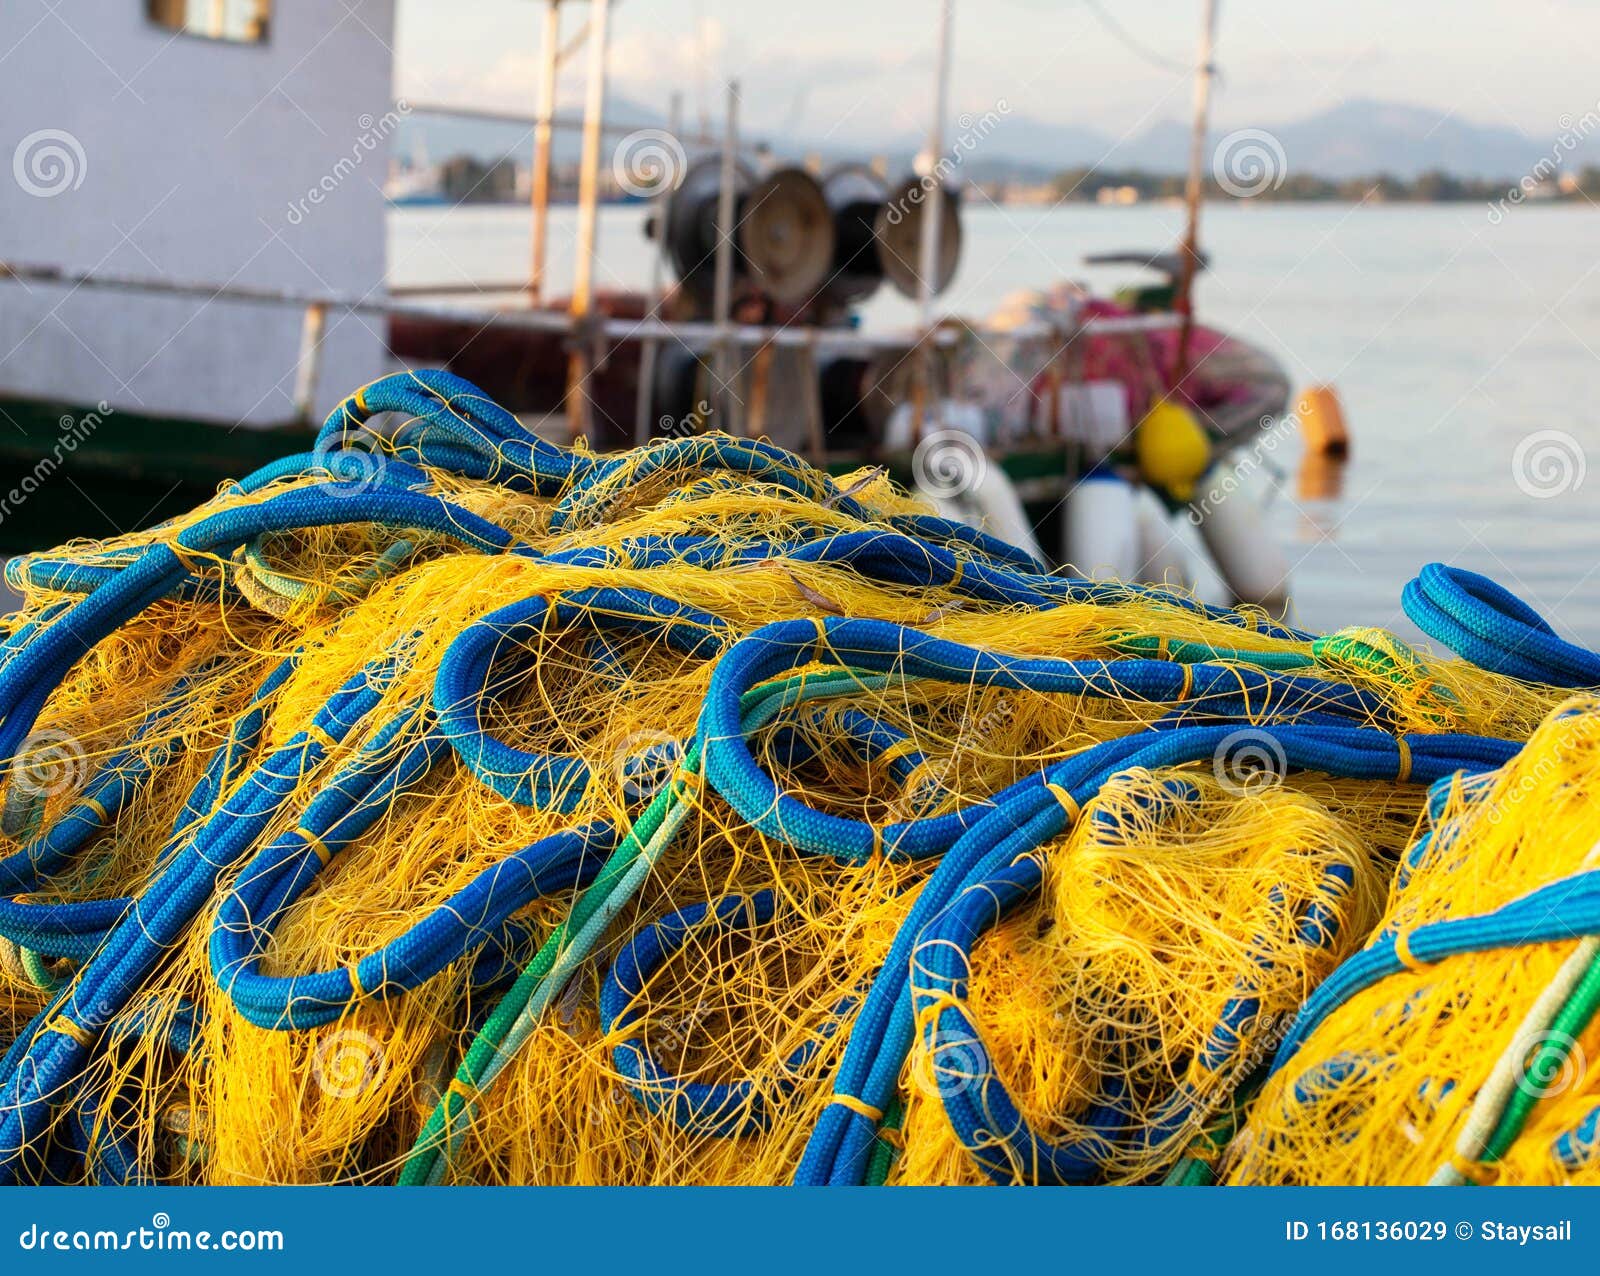 Redes De Pesca Y Embarcaciones De Pesca Mar Mediterráneo, Grecia, Preveza  Imagen de archivo - Imagen de pescadores, retén: 168136029